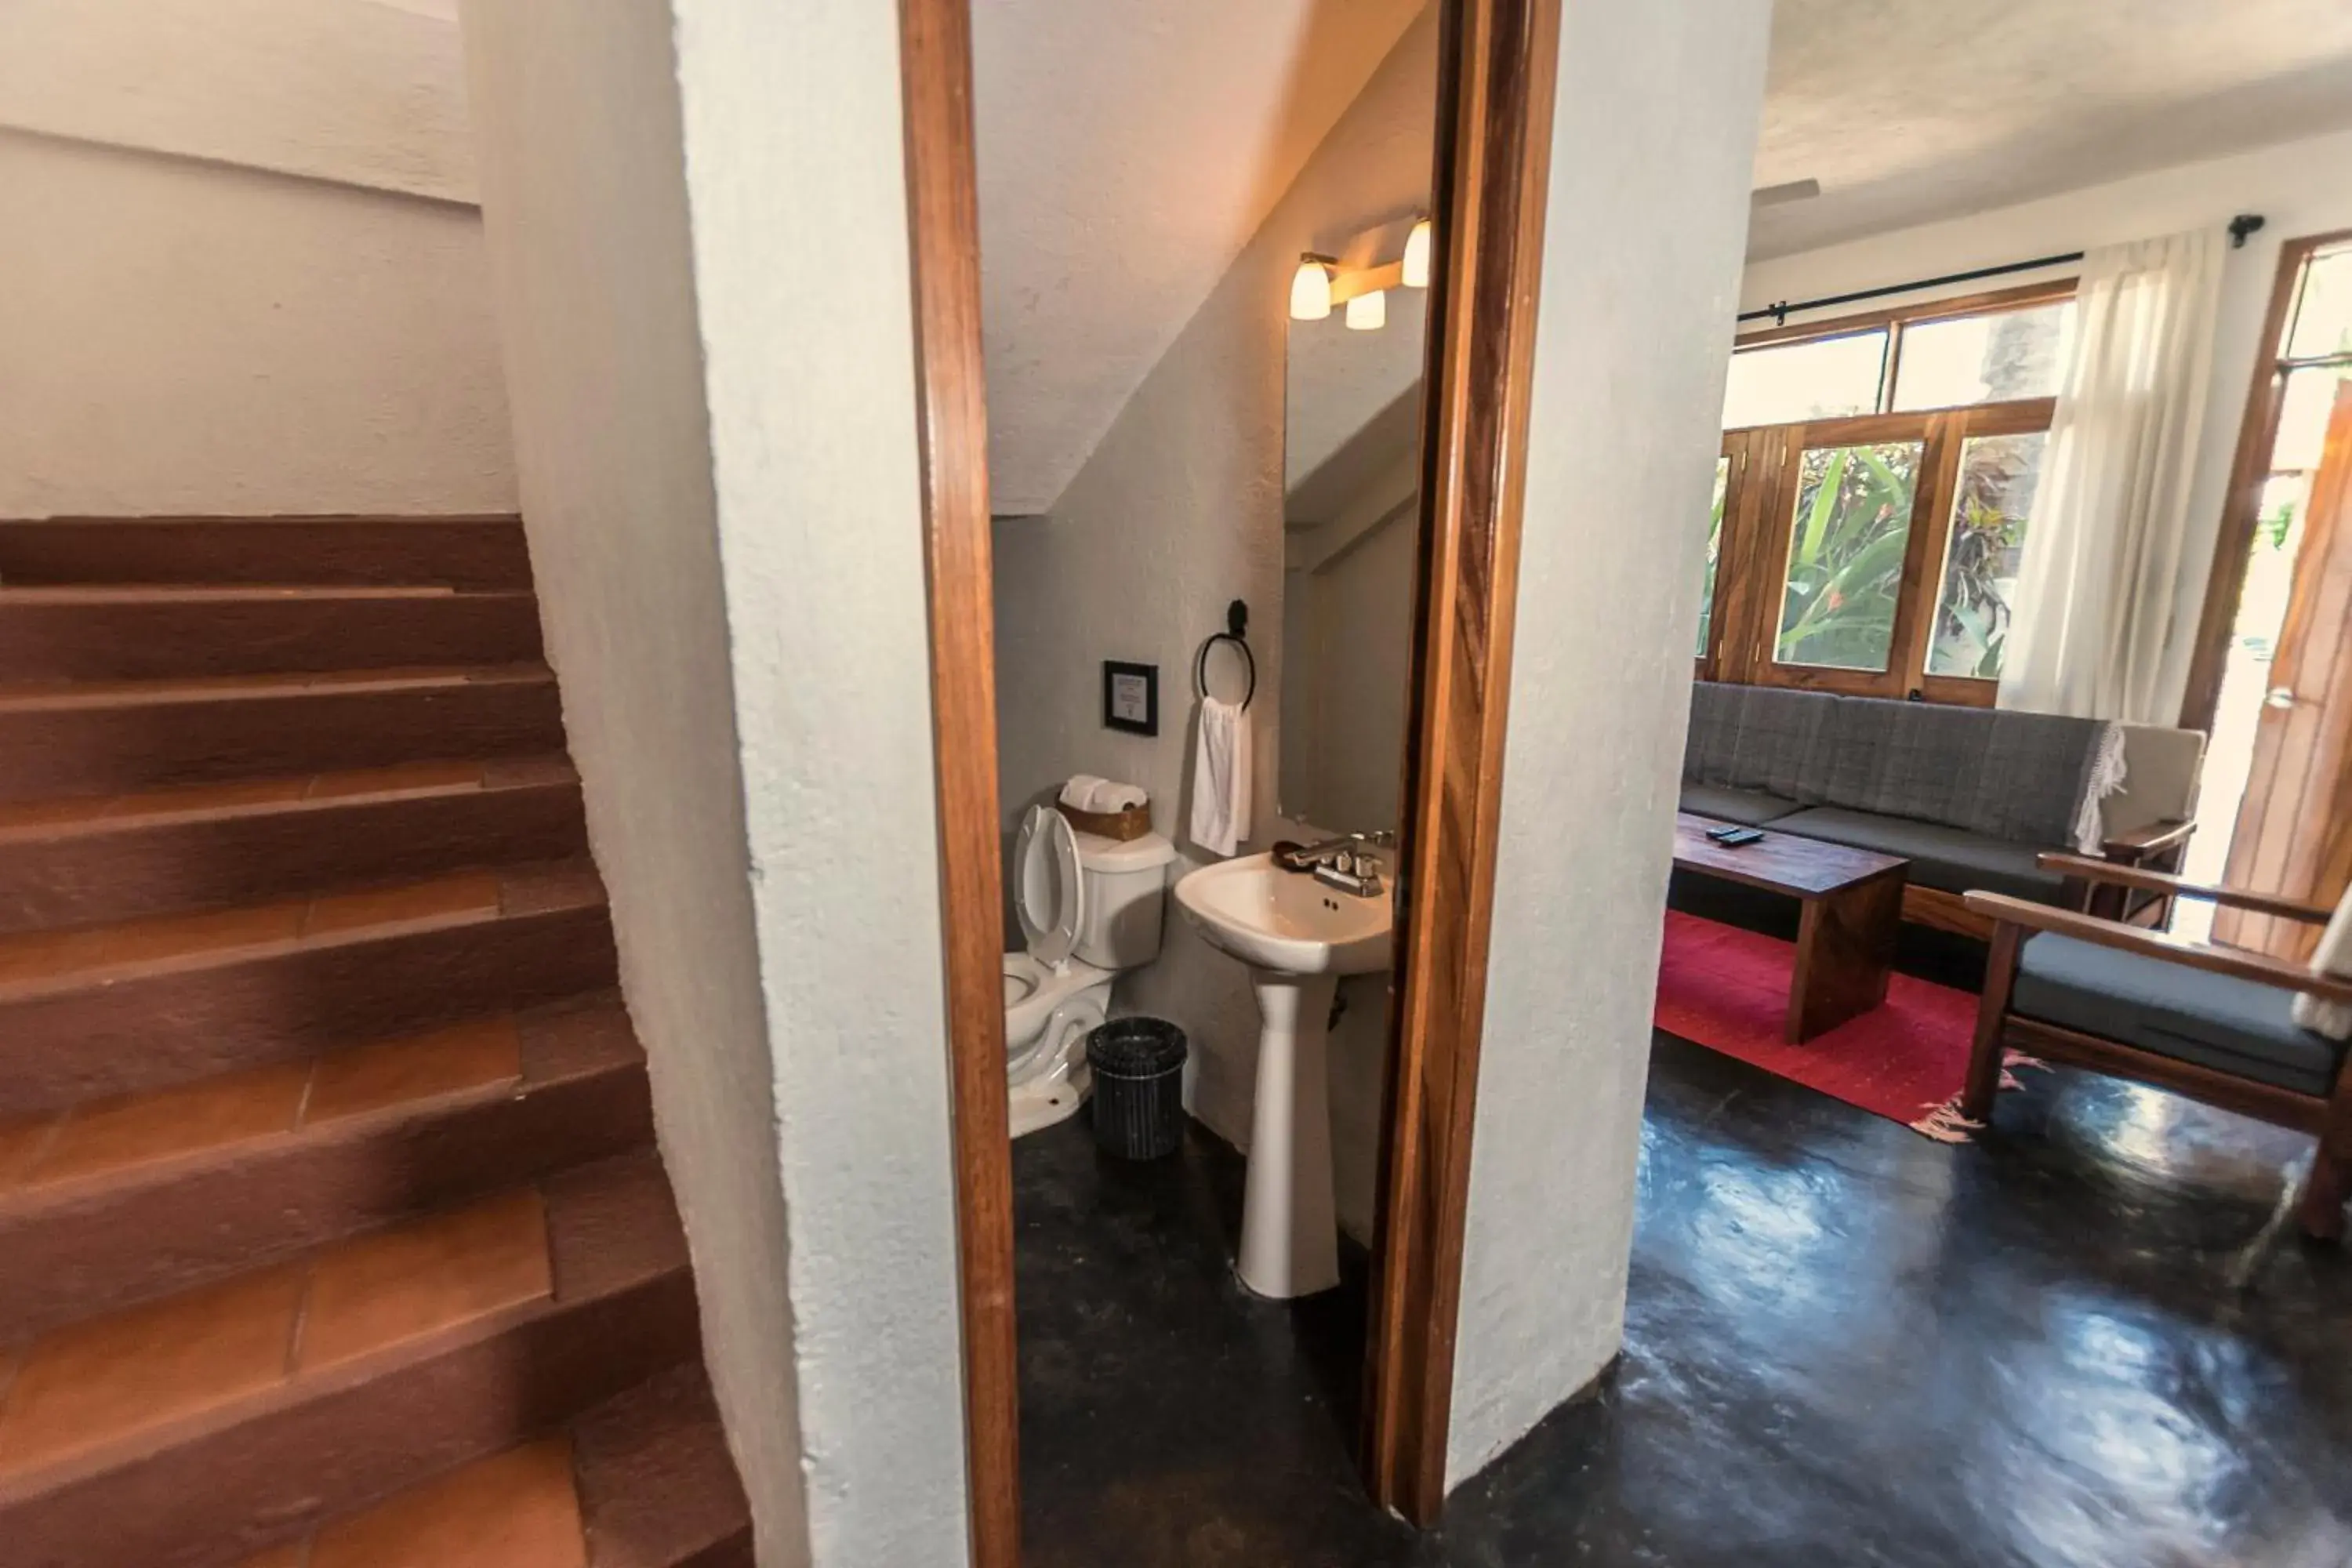 Bathroom in Villas Carrizalillo